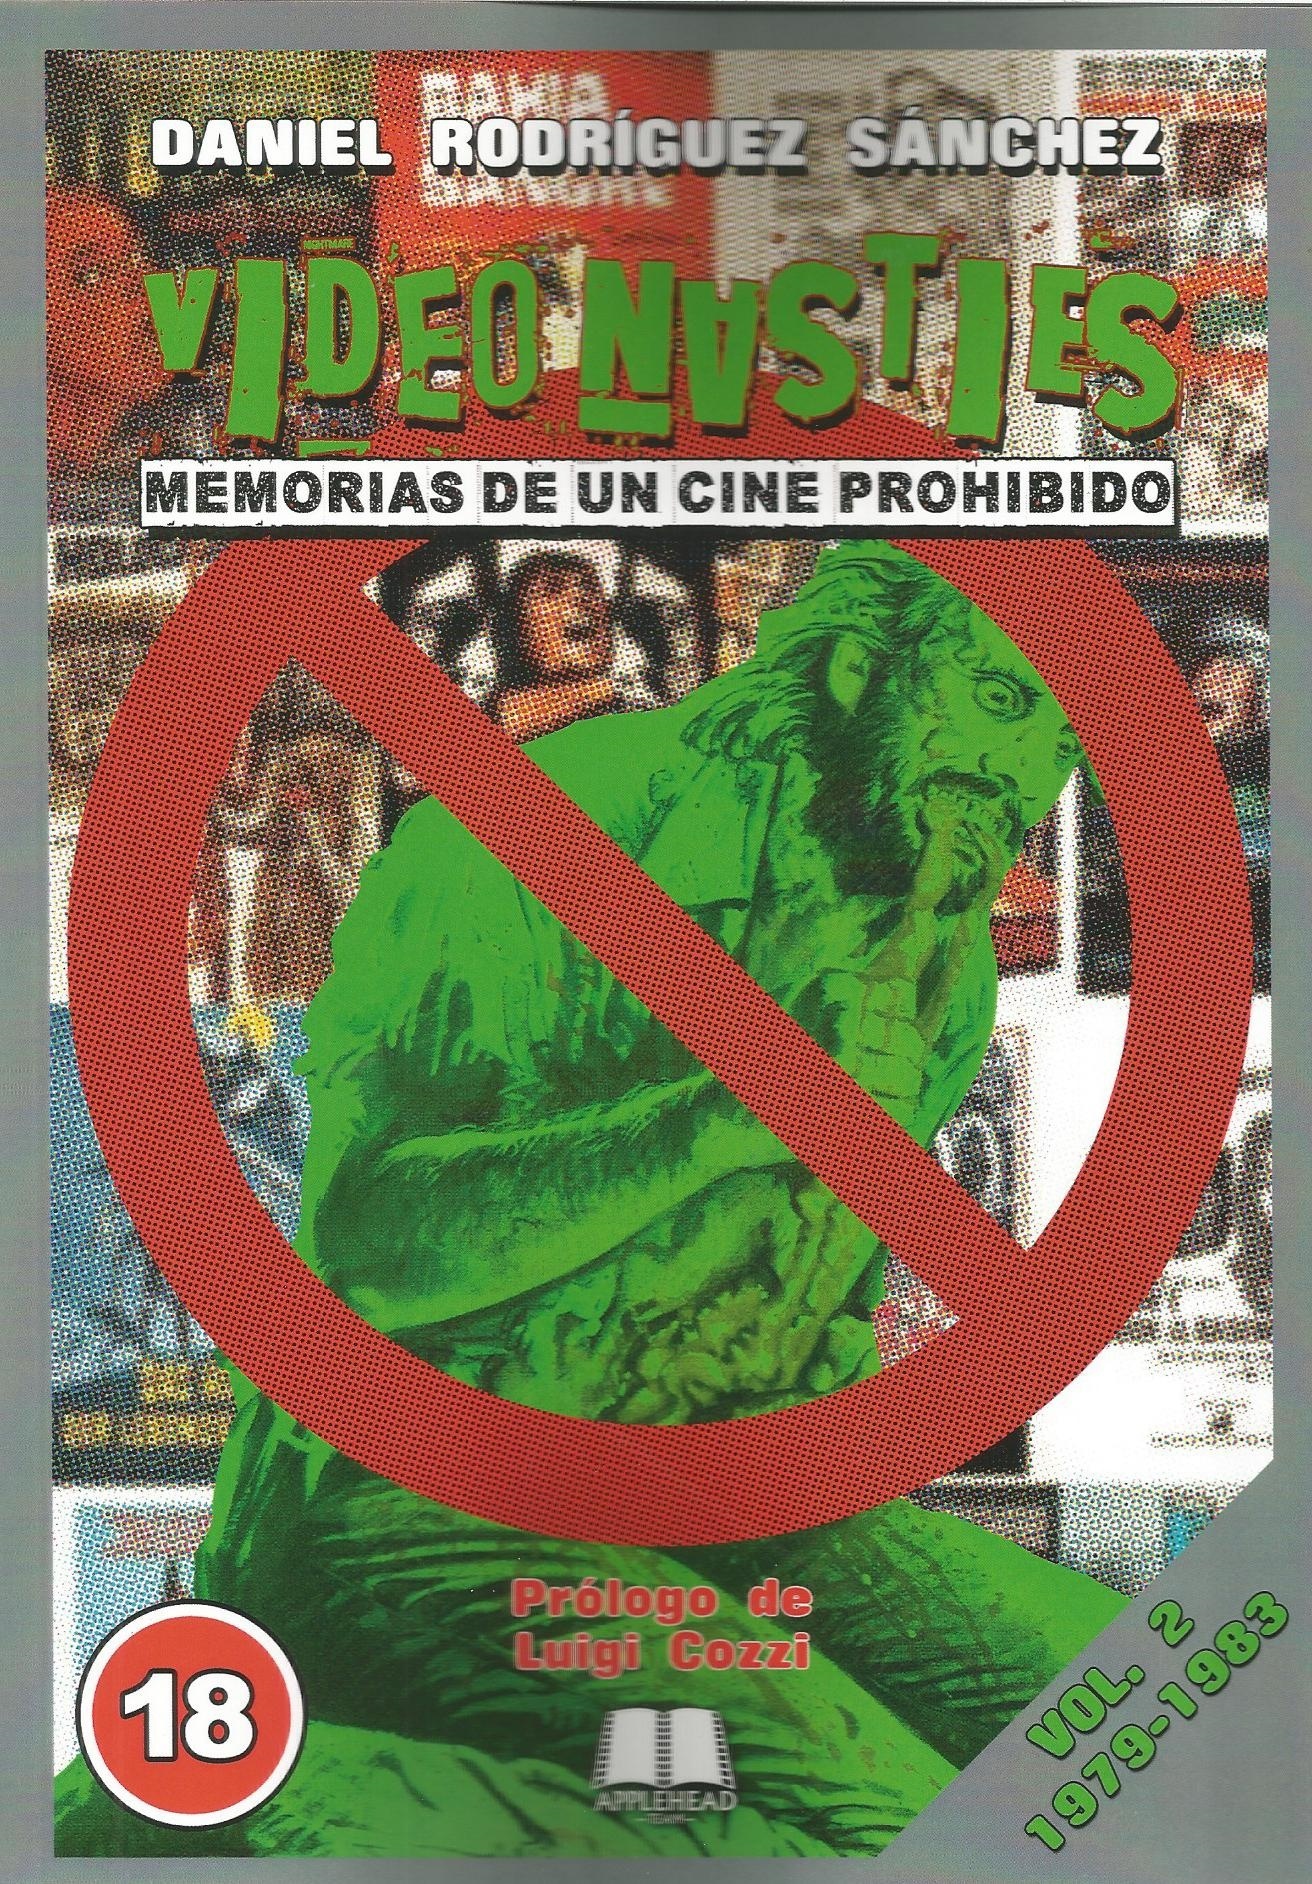 Video Nasties. Memorias de un cine prohibido Vol. 2. 1979-1983. 